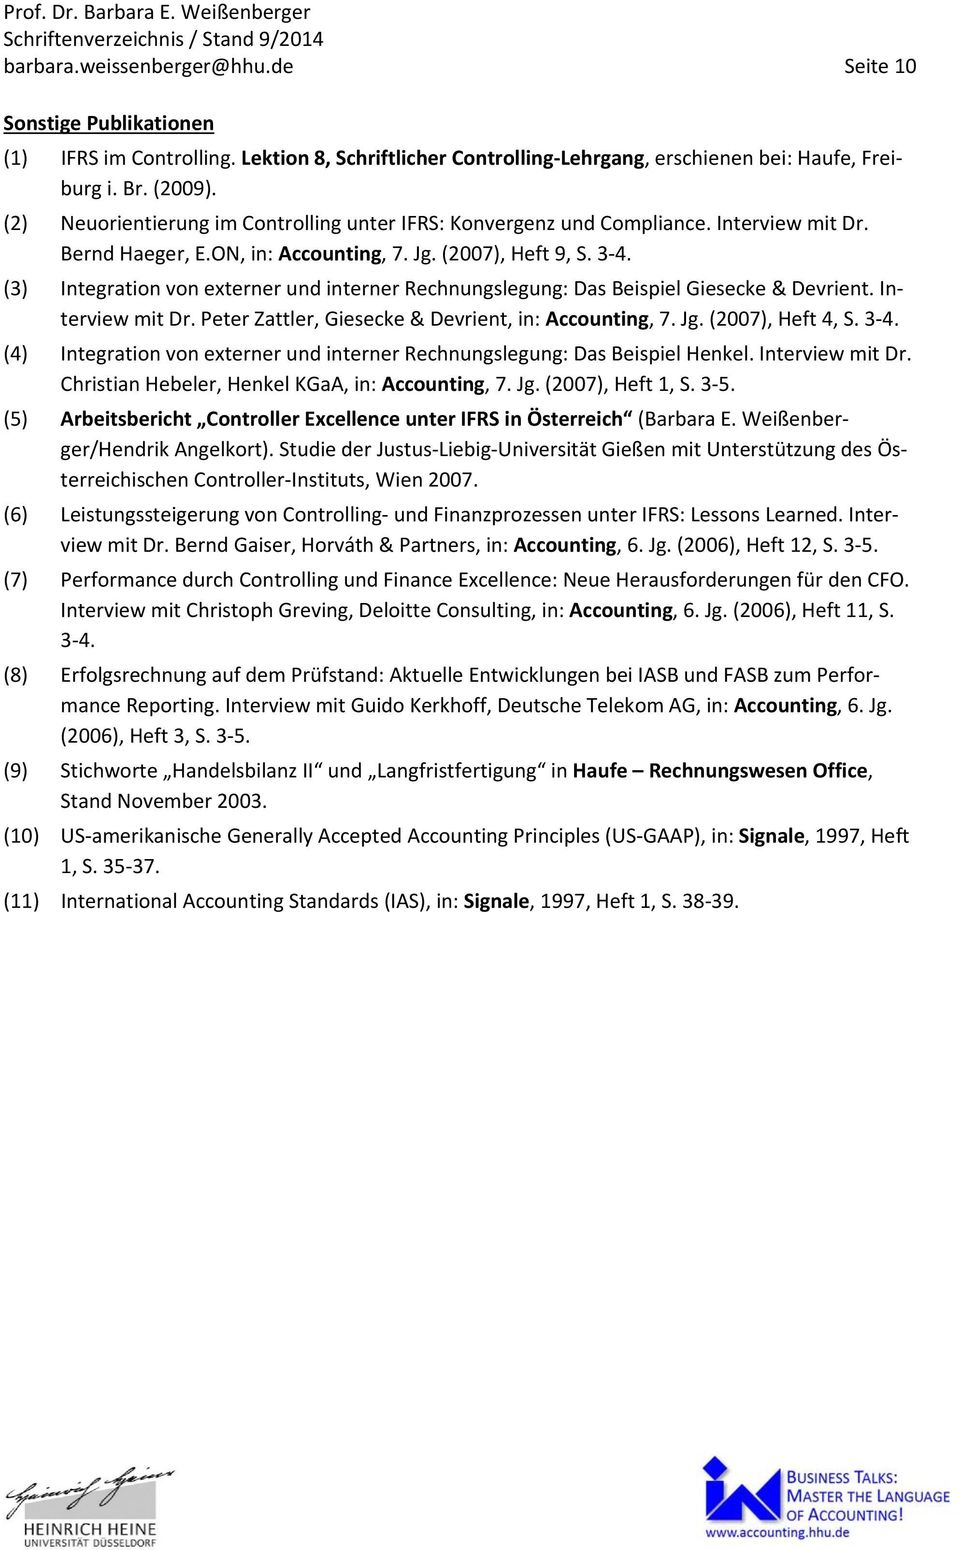 (3) Integration von externer und interner Rechnungslegung: Das Beispiel Giesecke & Devrient. Interview mit Dr. Peter Zattler, Giesecke & Devrient, in: Accounting, 7. Jg. (2007), Heft 4, S. 3 4.